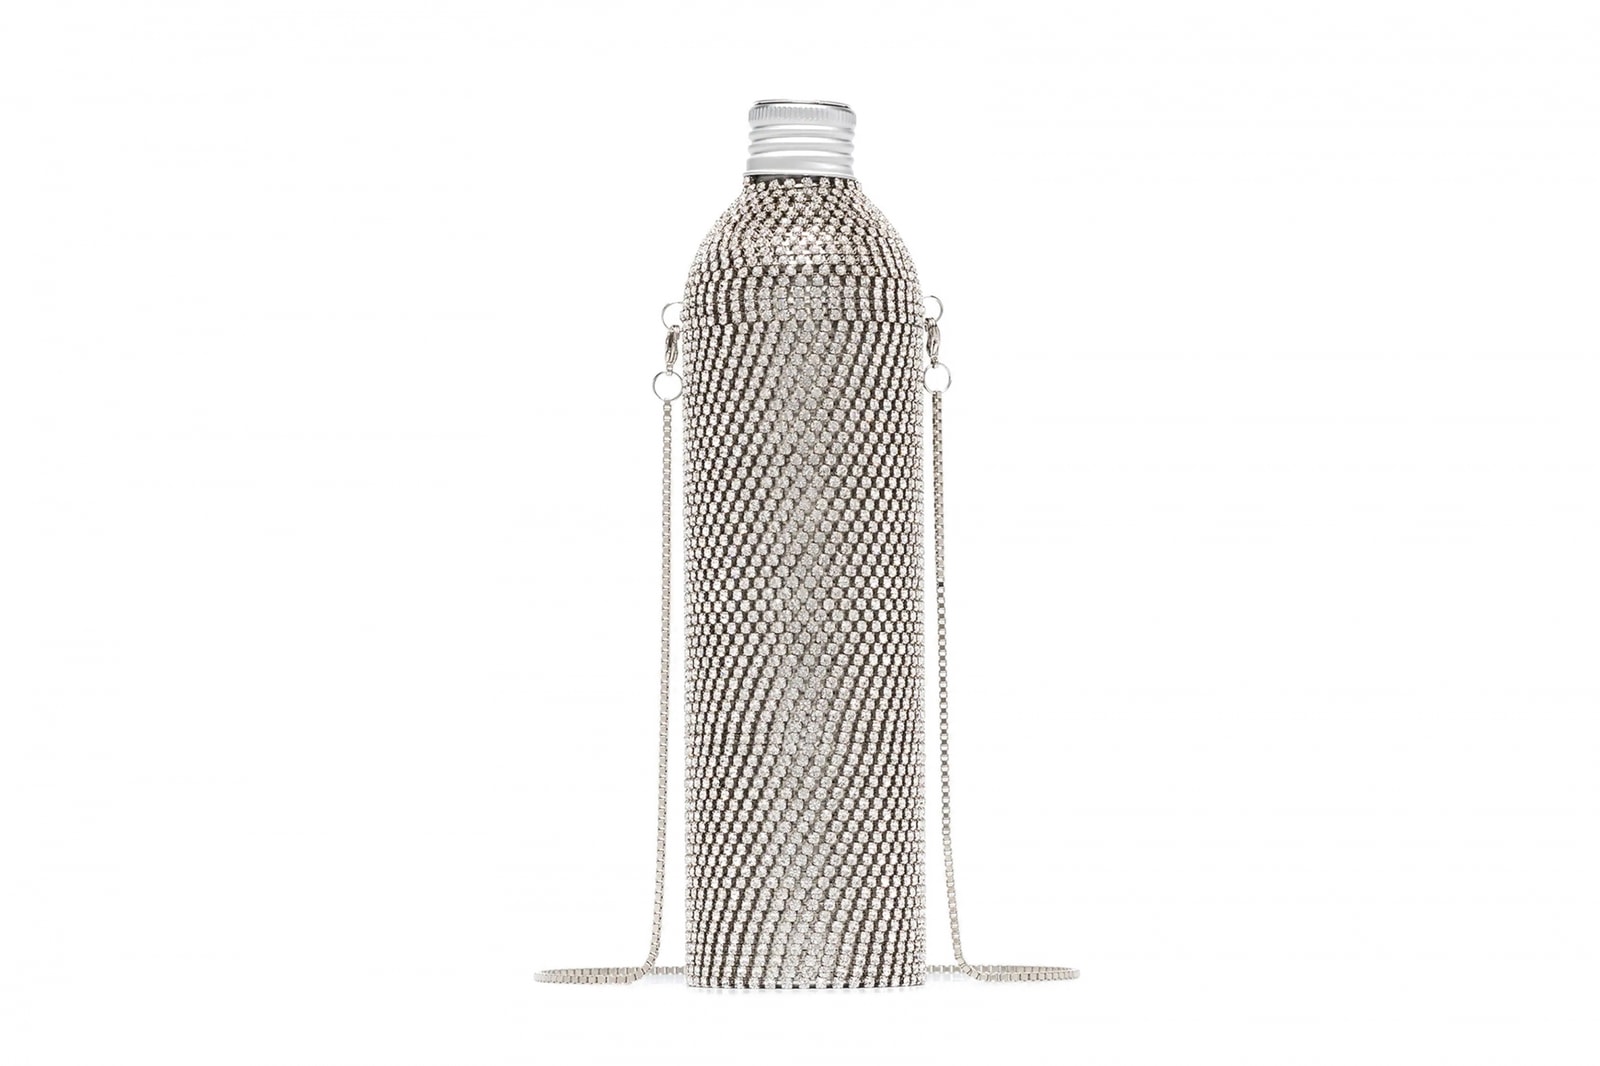 Luxury Water Bottle Trend Where to Buy Marine Serre Jacquemus Loewe